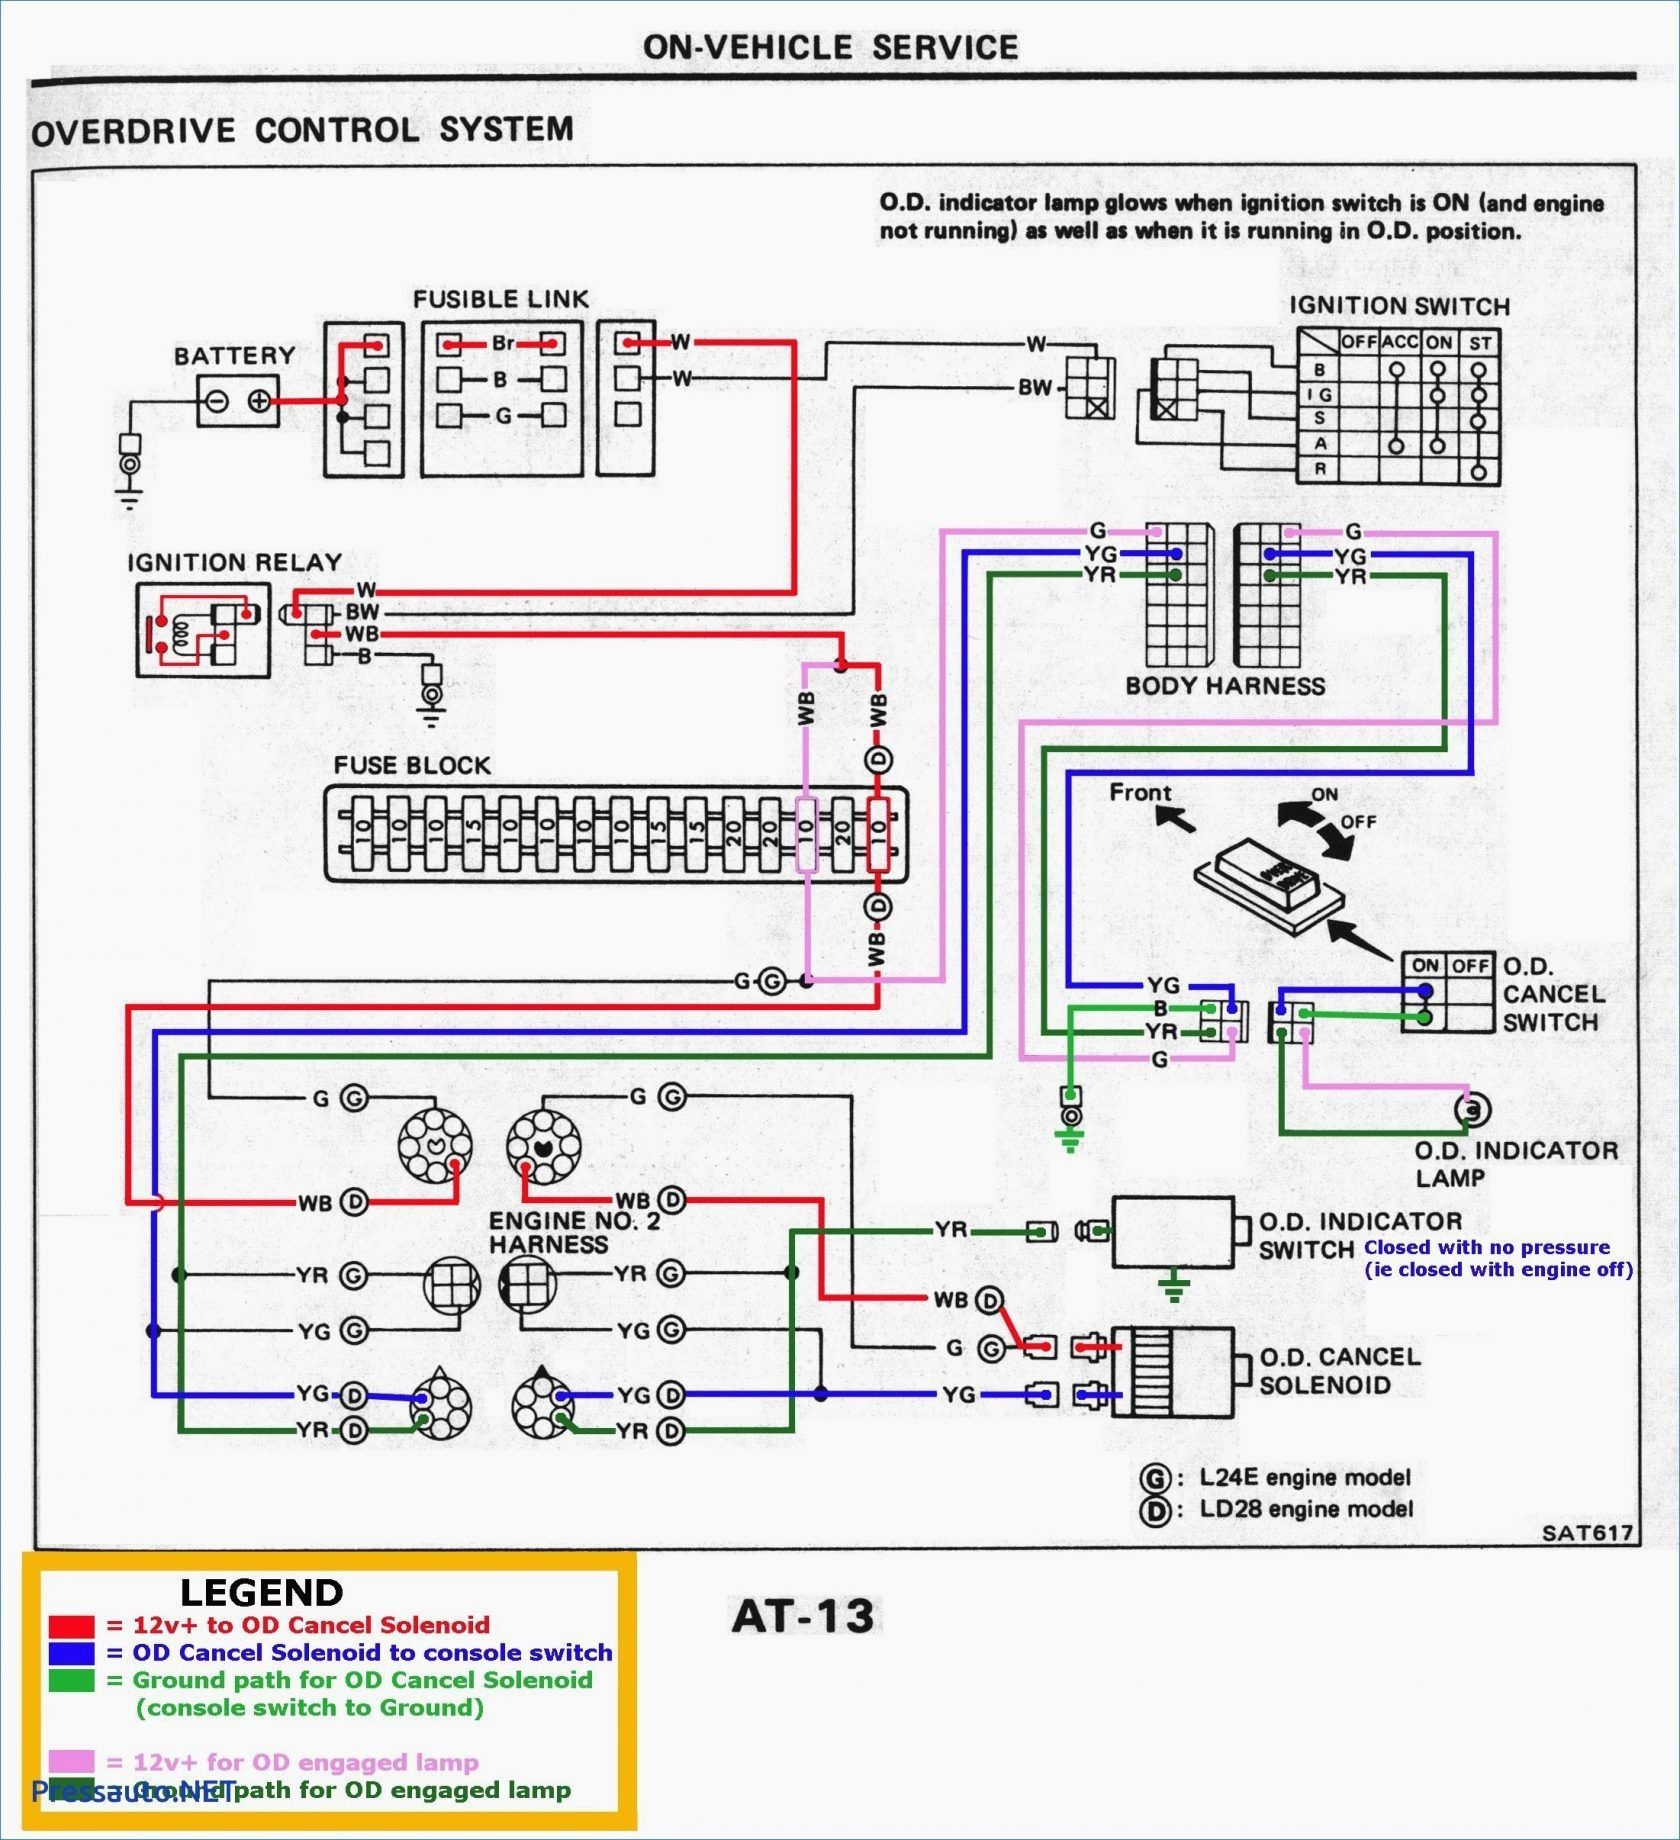 Car Amp Installation Diagram ford Wiring Diagram Radio Amplifiers Of Car Amp Installation Diagram